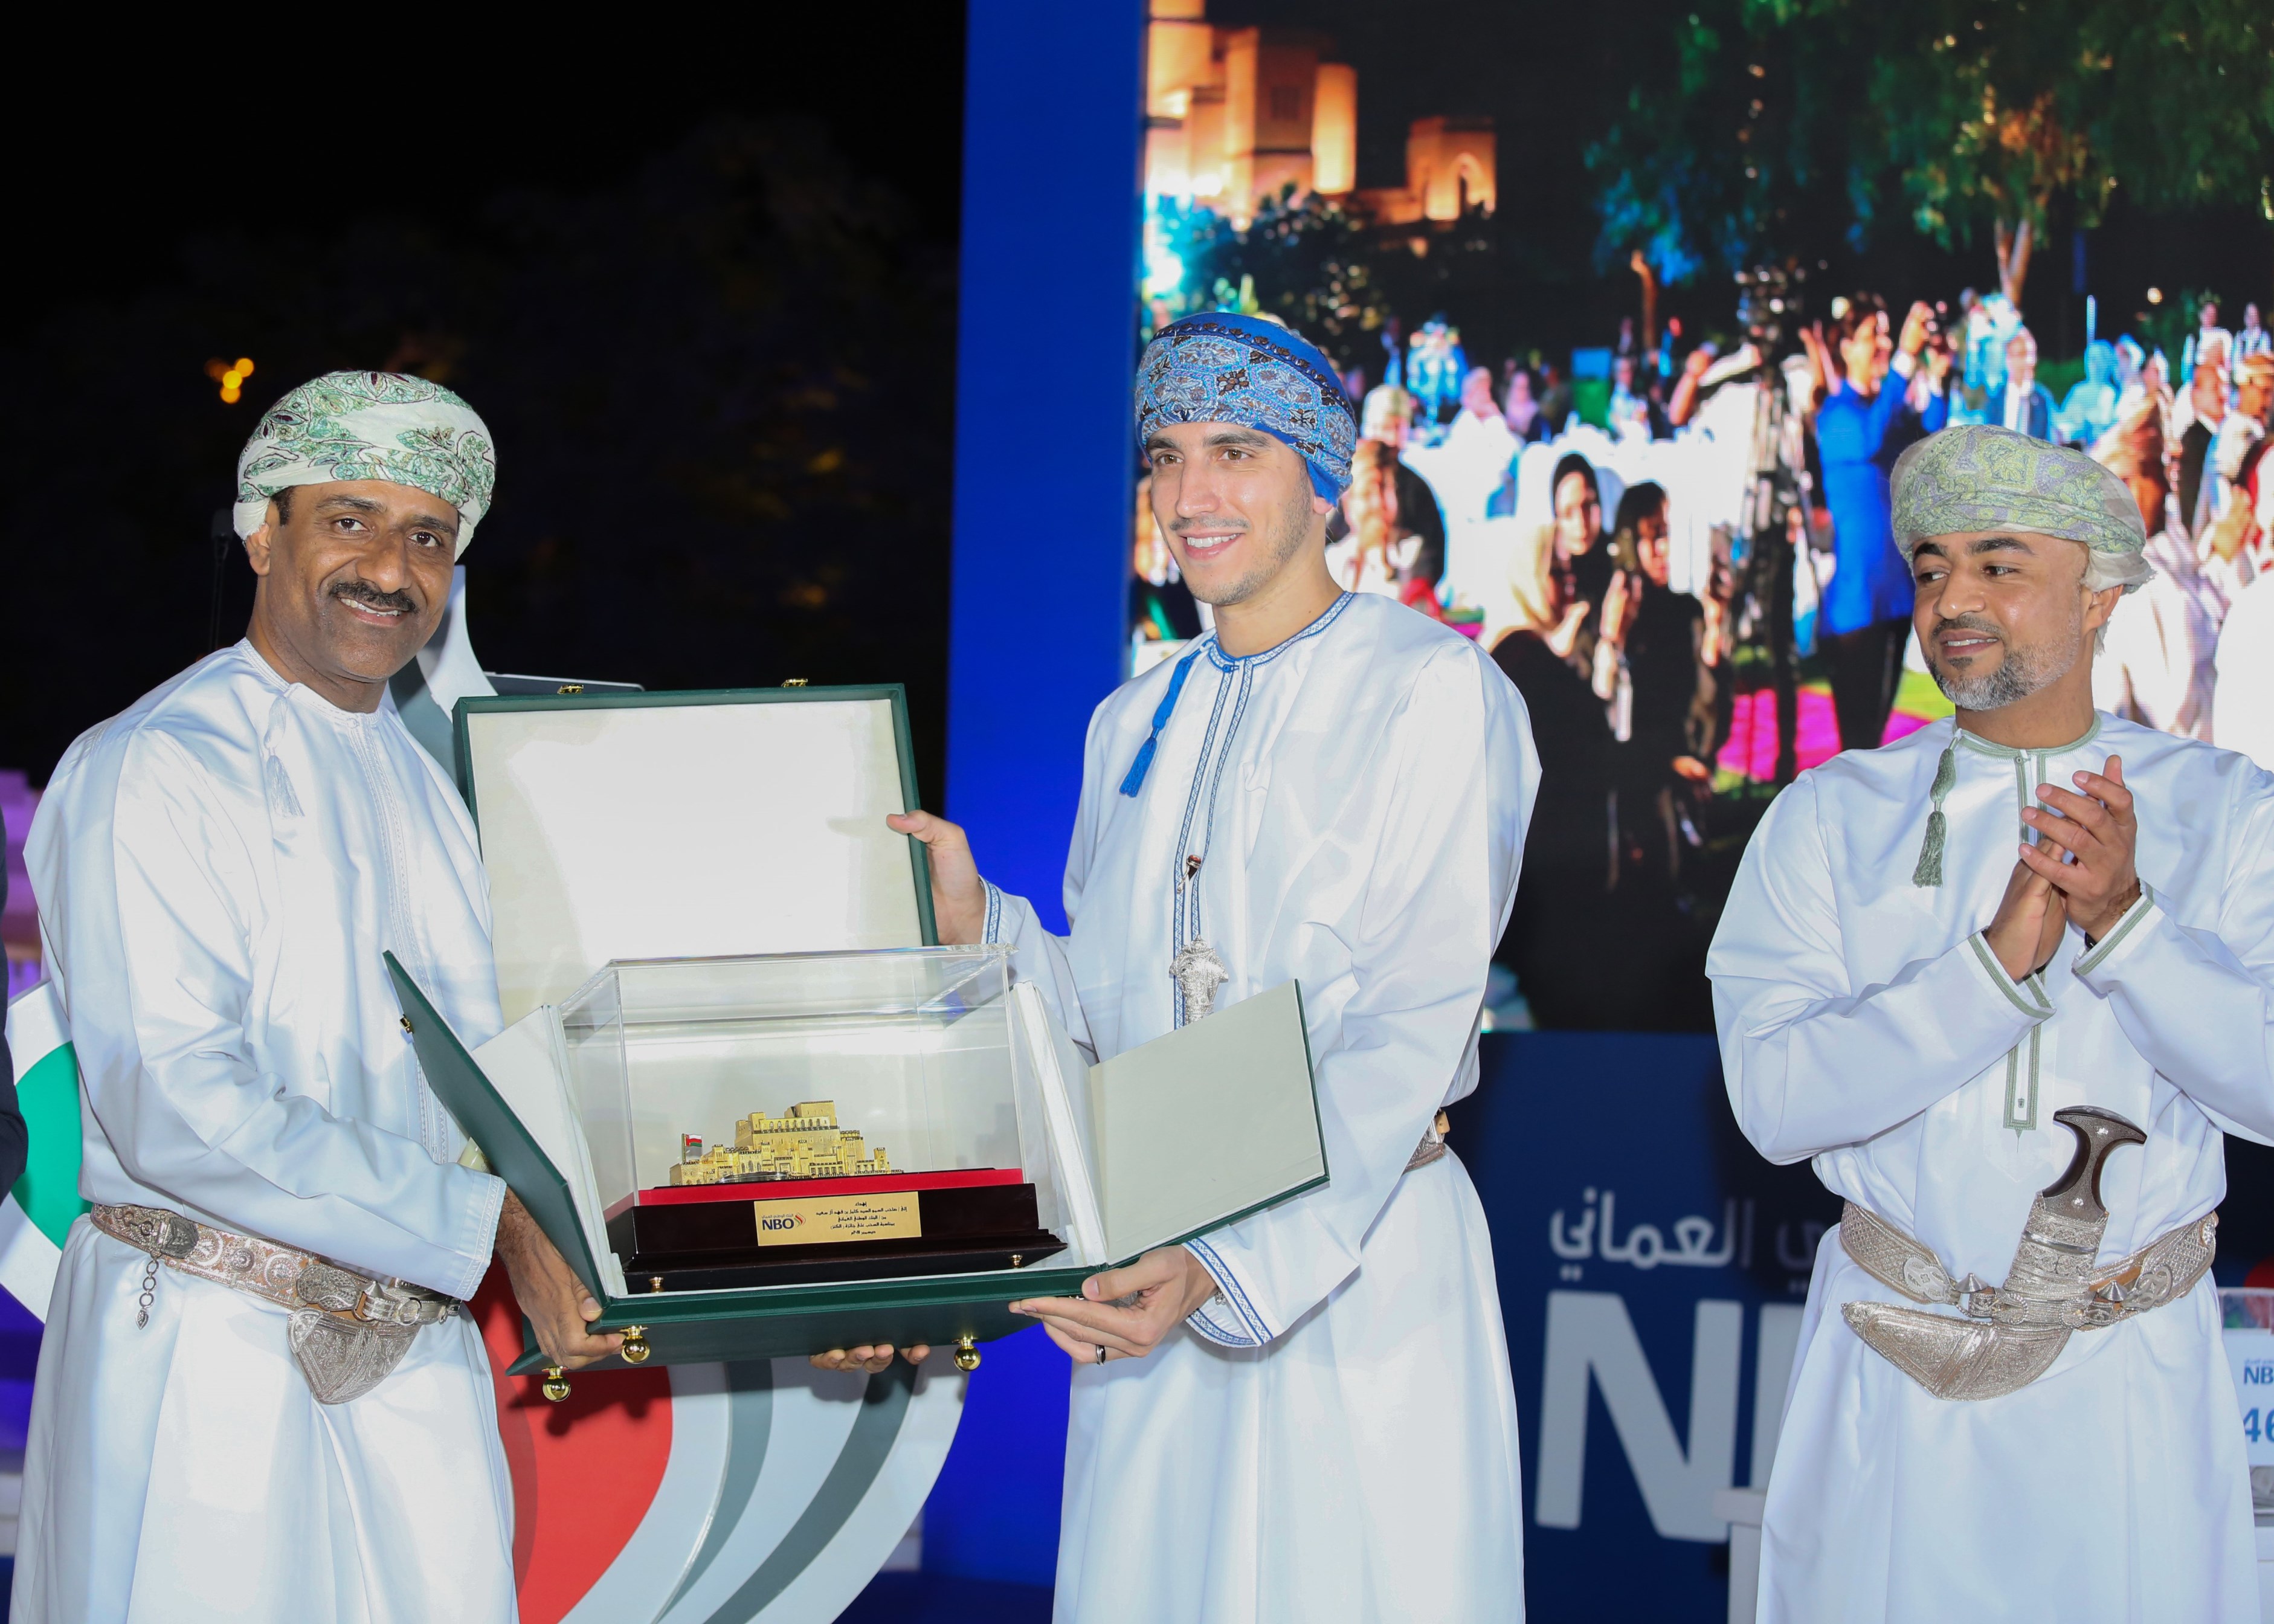 "البنك الوطني العماني" يعلن عن الفائزين بجائزة الـ 500 ألف ريال